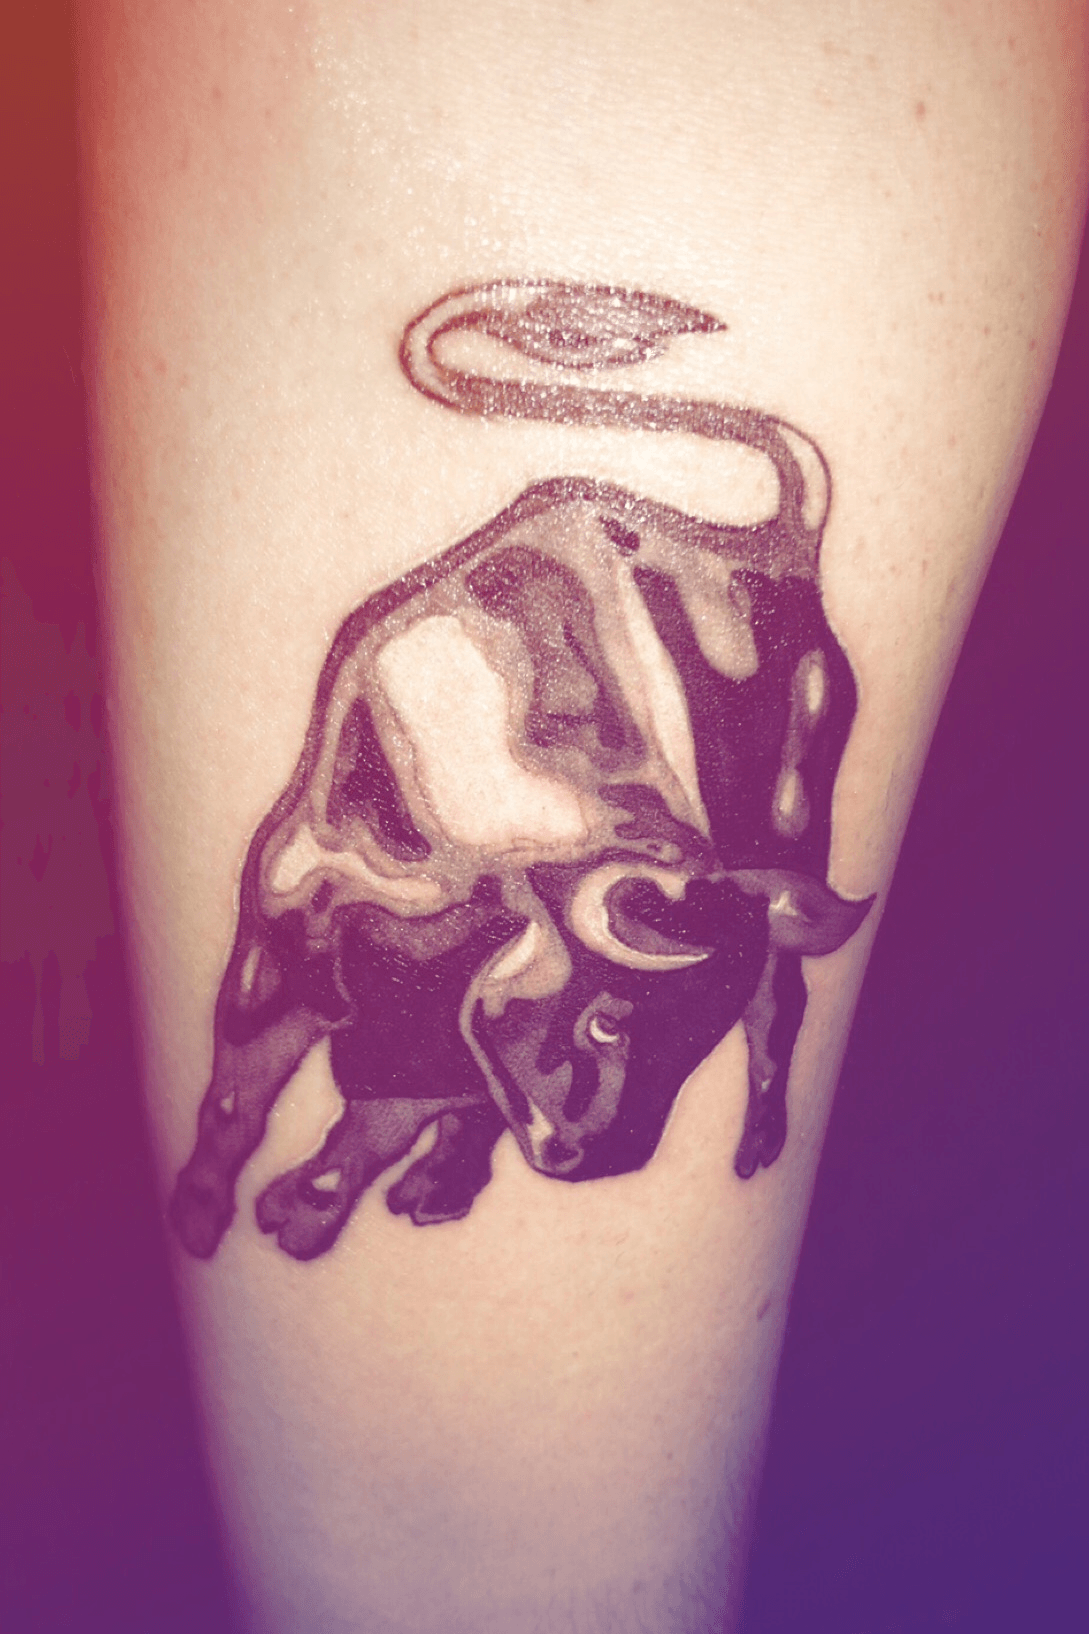 No13 Ink   𝔟𝔞𝔠𝔨 𝔬𝔣 𝔱𝔥𝔢 𝔥𝔞𝔫𝔡 𝔟𝔲𝔩𝔩𝔰 𝔱𝔞𝔱𝔱𝔬𝔬   Tattooartist  no13ink  dianatattooberlin bull bulls stier  stierkopf stiertattoo taurus new tattoo redeyes tattoos ink inked  hustlebutterdeluxe 